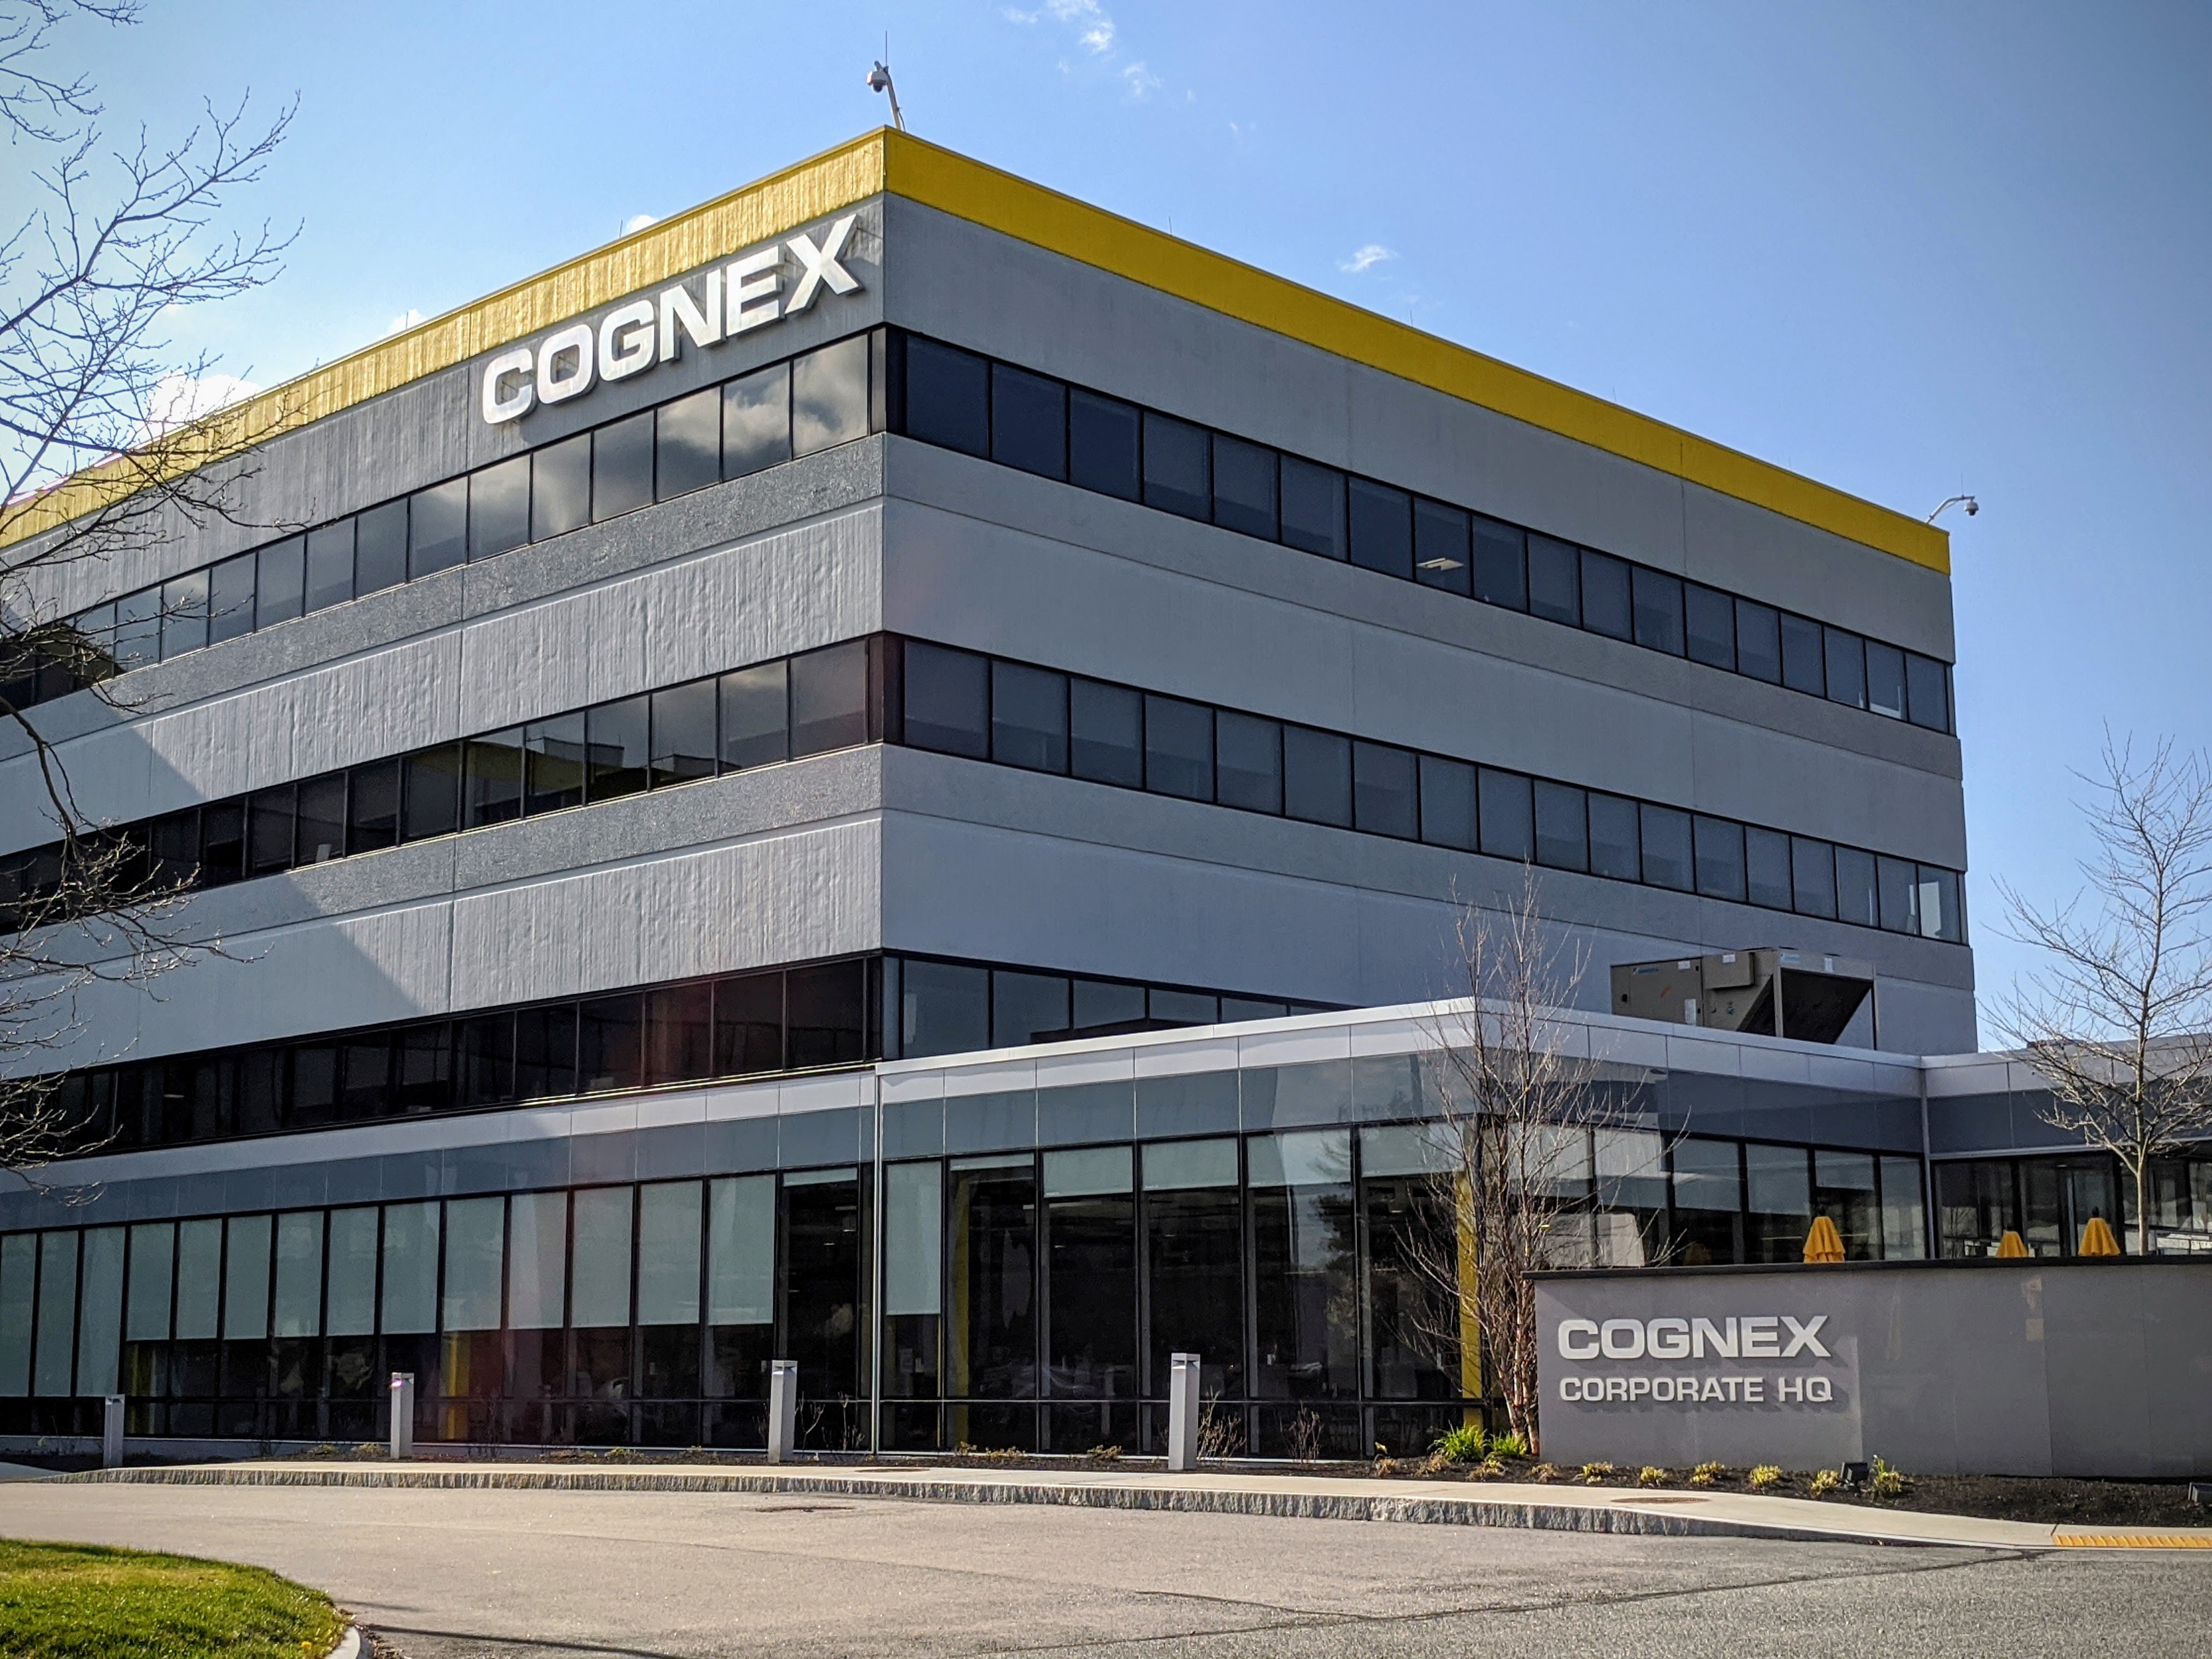 Modsætte sig godt Midlertidig Cognex acquires German lighting firm as part of expansion into EV market |  Worcester Business Journal